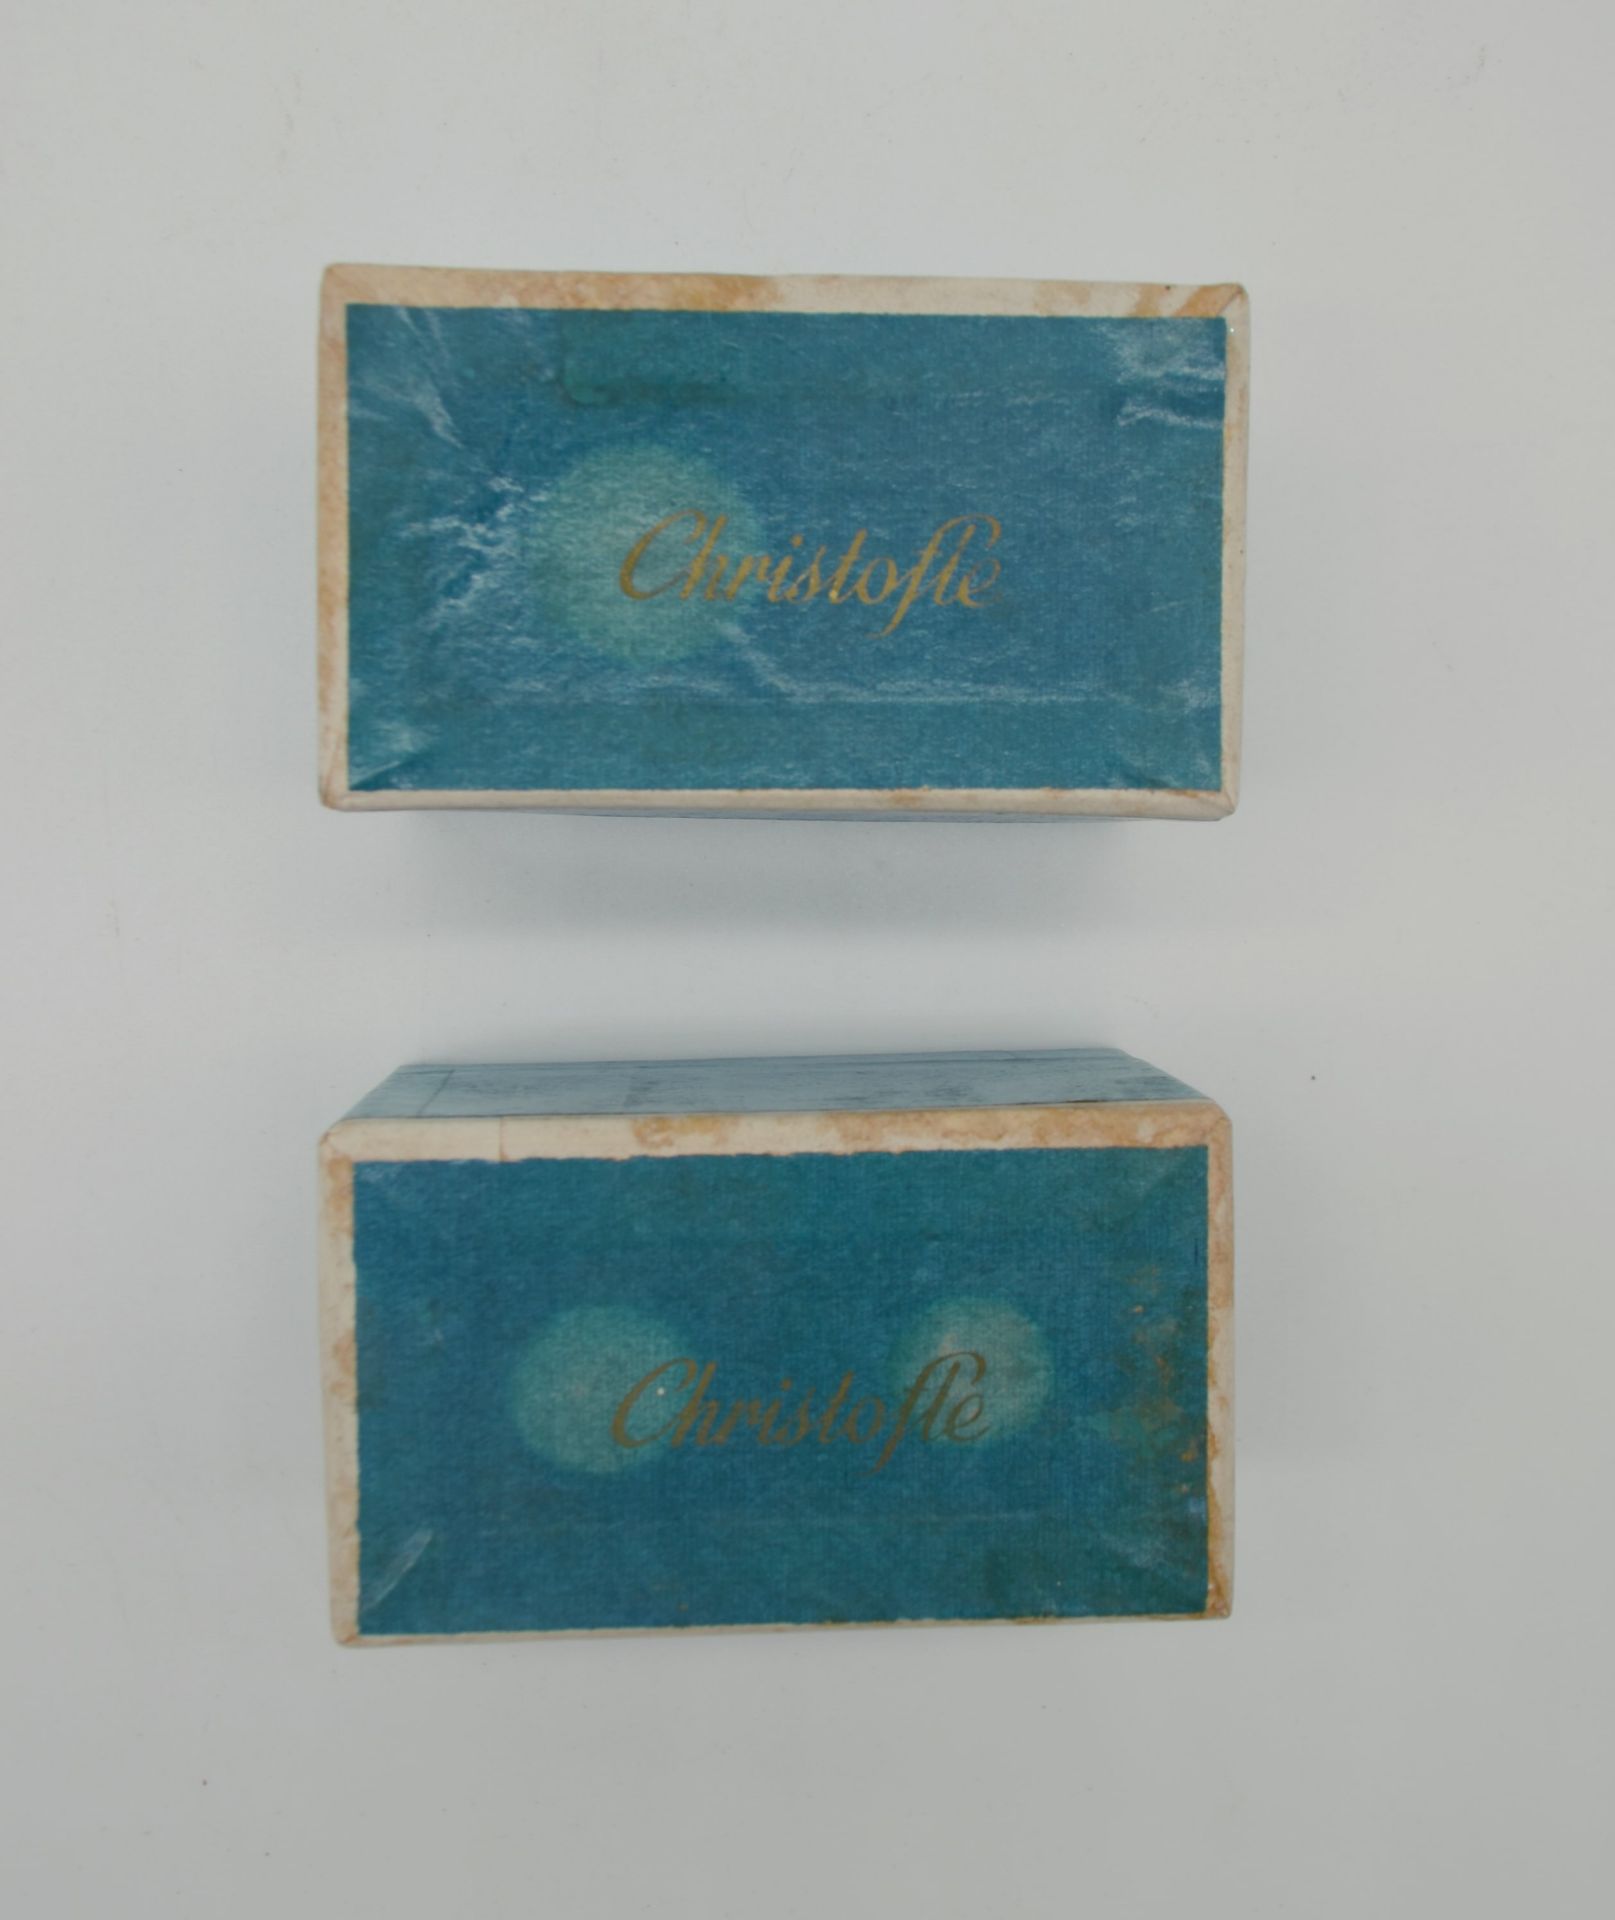 Lot de 2 boites de salerons Christofle dans leur boite d'origine 1950 - Image 2 of 3